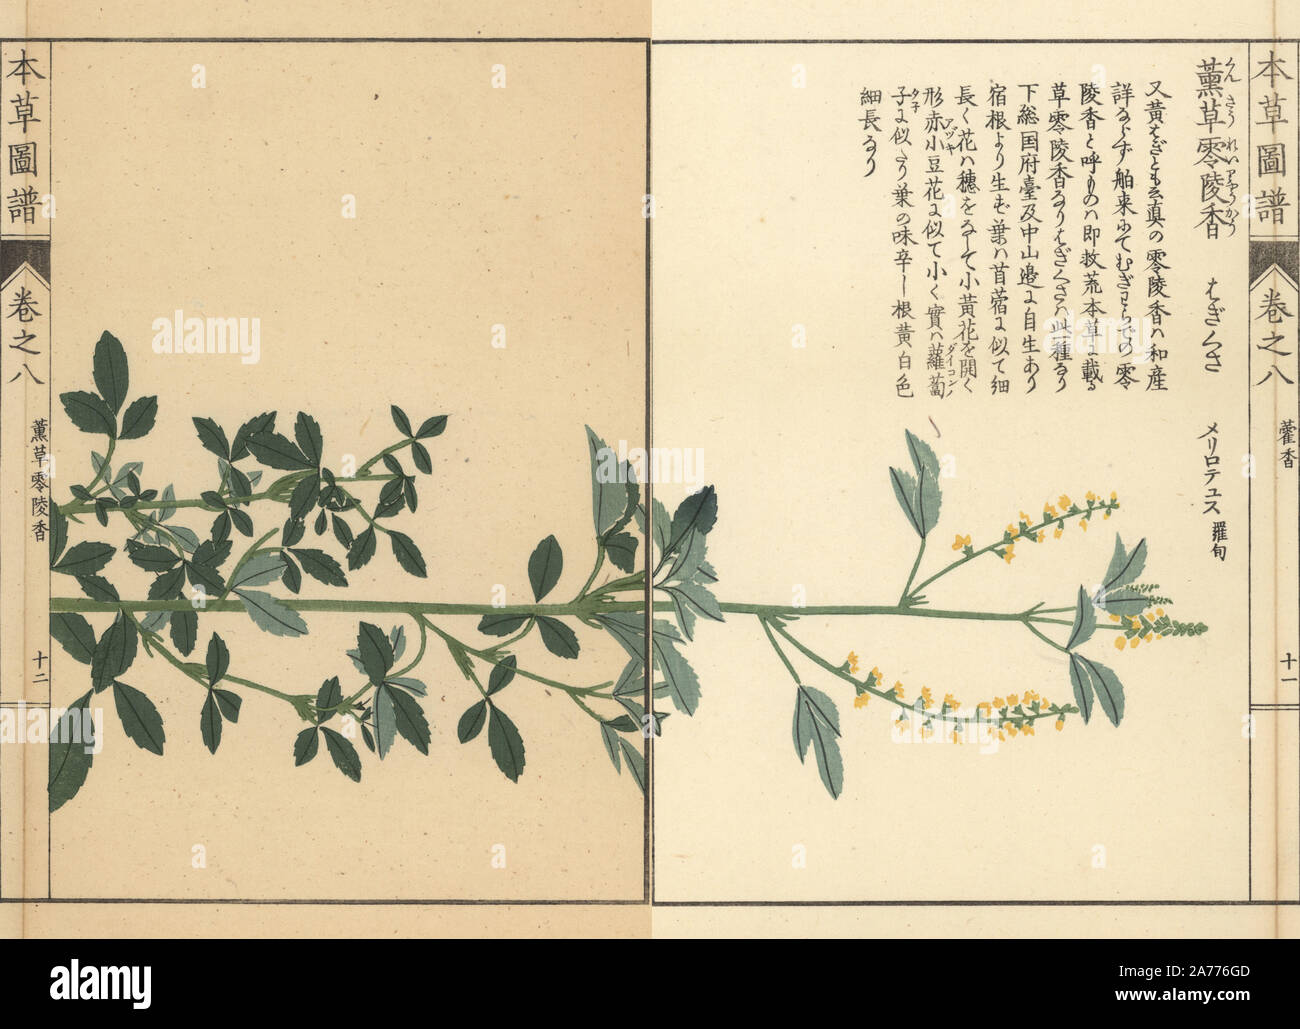 Meliloto, Melilotus indicus. Stampato a colori woodblock incisione di Kan'en Iwasaki da 'Honzo Zufu", una guida illustrata per piante medicinali, Giappone, 1884. La Iwasaki (1786-1842) era un giapponese botanico, entomologo e zoologo. Egli è stato uno dei primi botanici giapponesi per incorporare la conoscenza occidentale nei suoi studi. Foto Stock